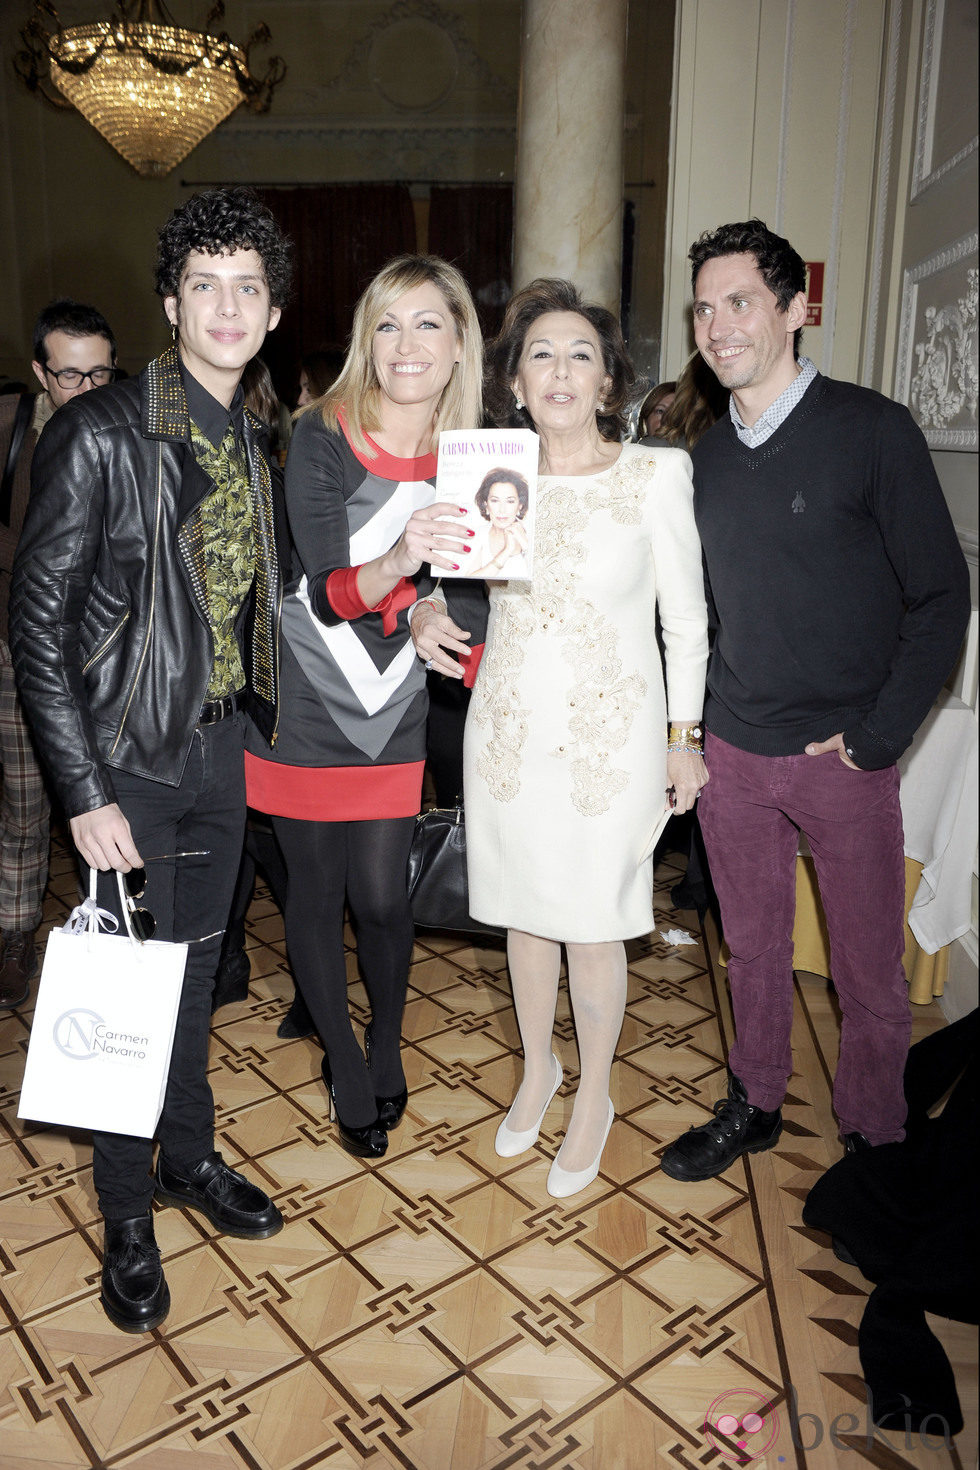 Eduardo Casanova, Luján Argüelles, Carmen Navarro y Paco León en la presentación del libro 'Belleza inteligente'